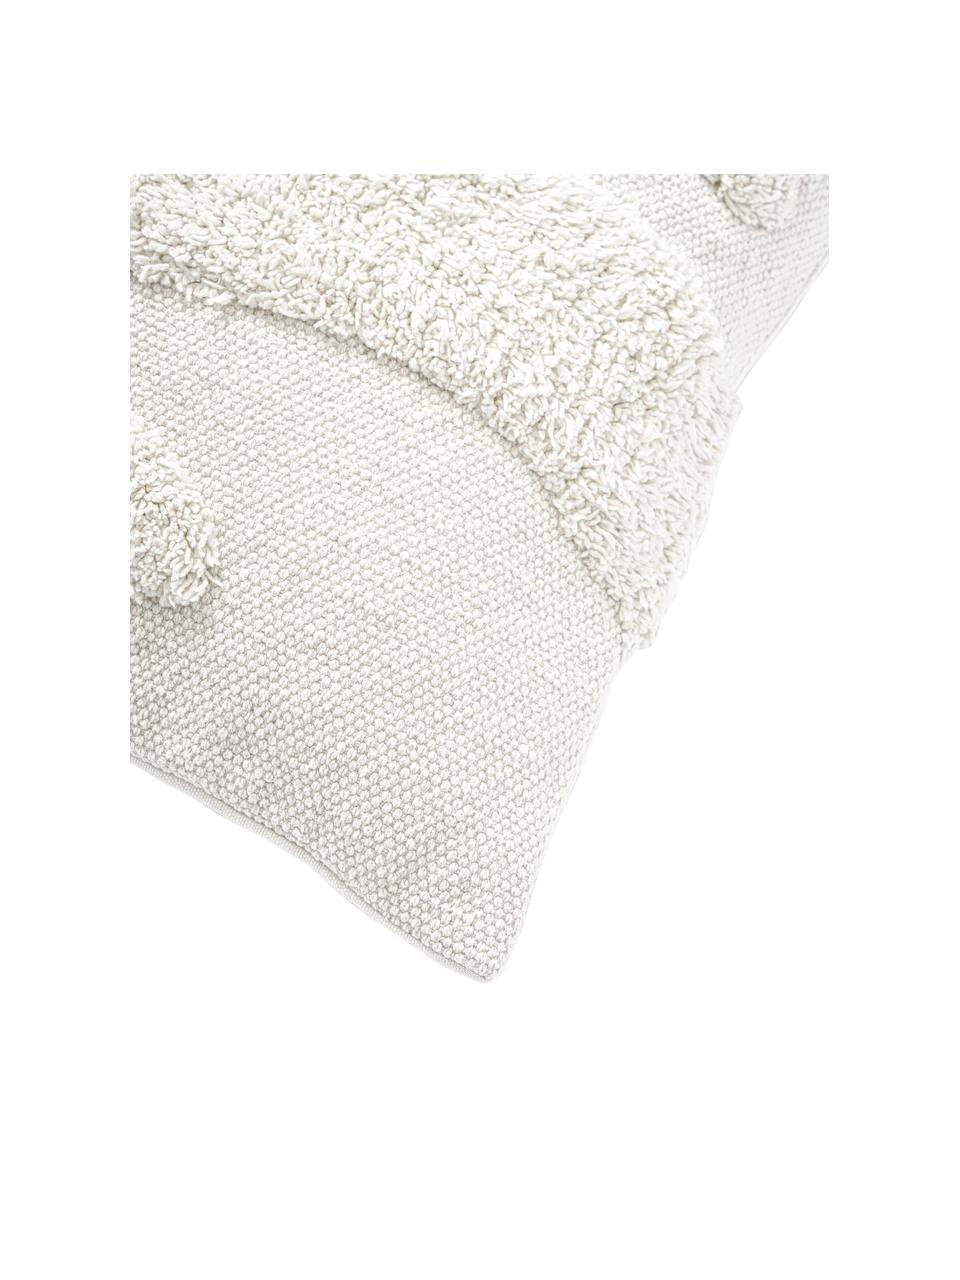 Poszewka na poduszkę w stylu boho Laerke, 100% bawełna z certyfikatem BCI, Kremowobiały, S 45 x D 45 cm